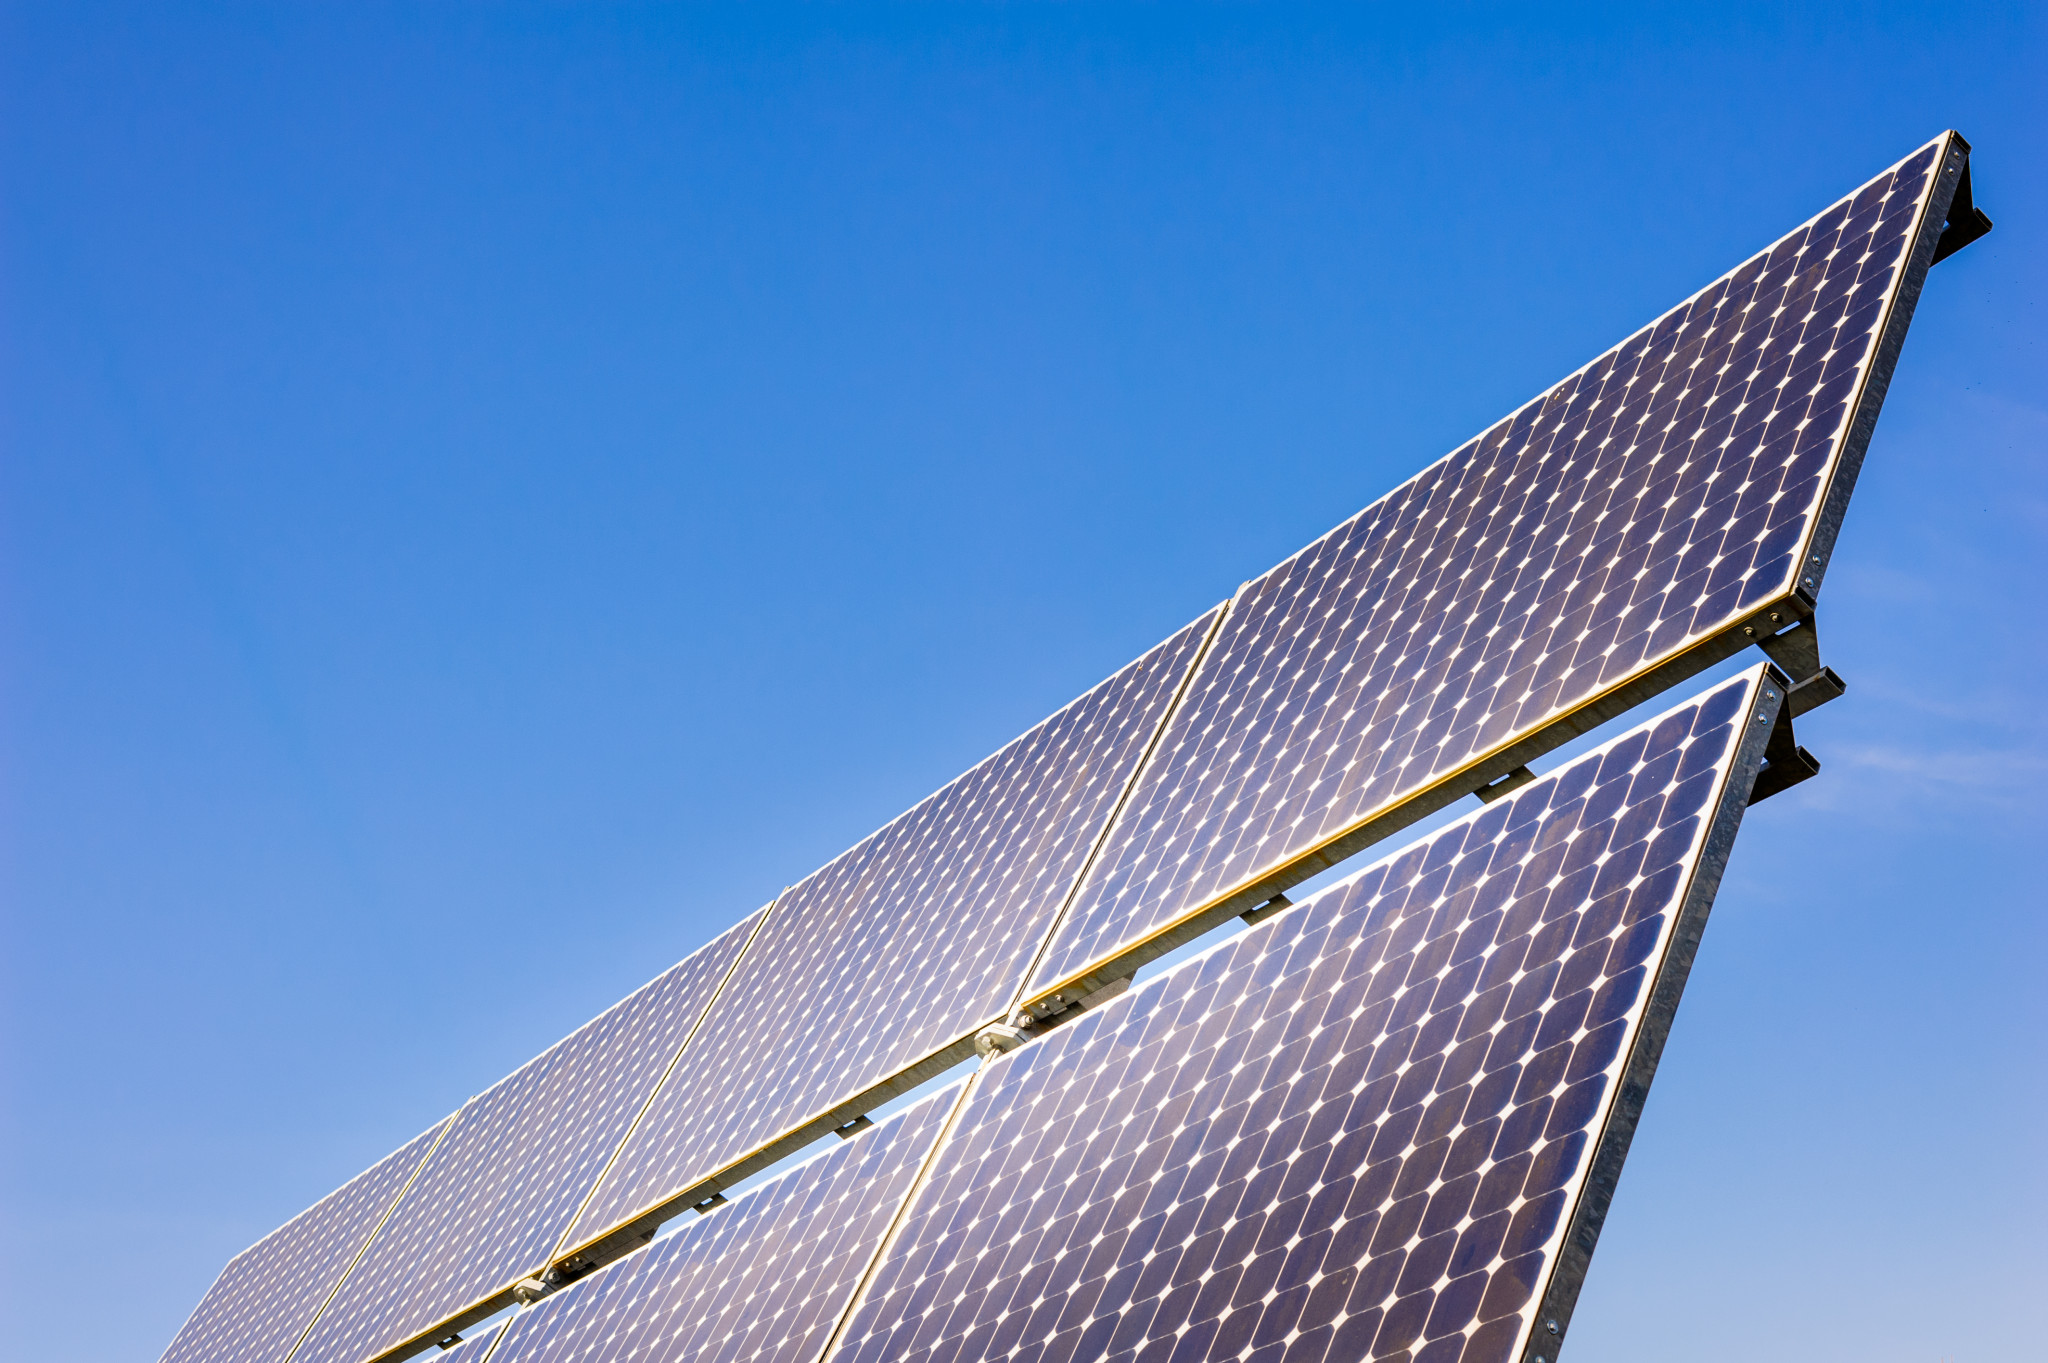 Solpaneler som producerar energi på ett klimatvänligt sätt.